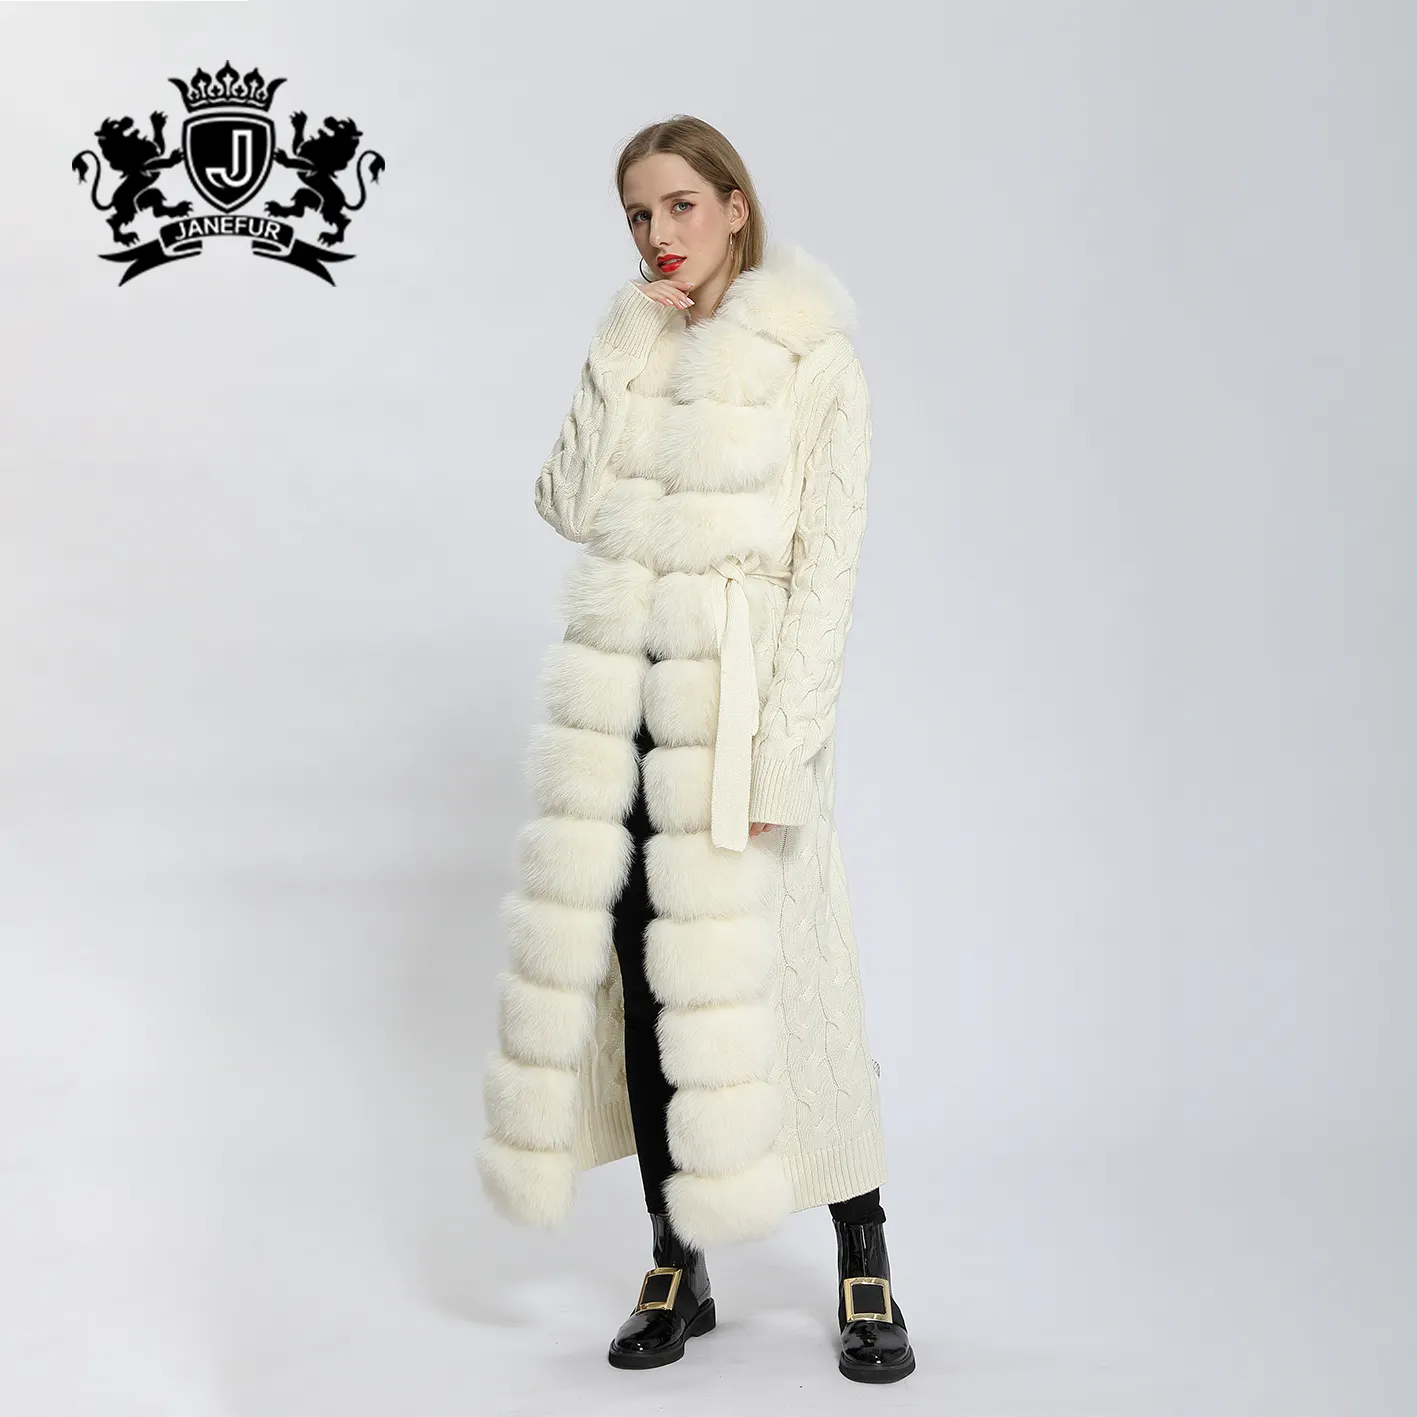 Janefur الروسية شعبية المرأة الفراء الطبيعي معطف طويل السيدات معطف فرو الثعلب الحقيقي الفراء سترة مقنعين 120-125 سنتيمتر طول سترة منسوجة تريكو